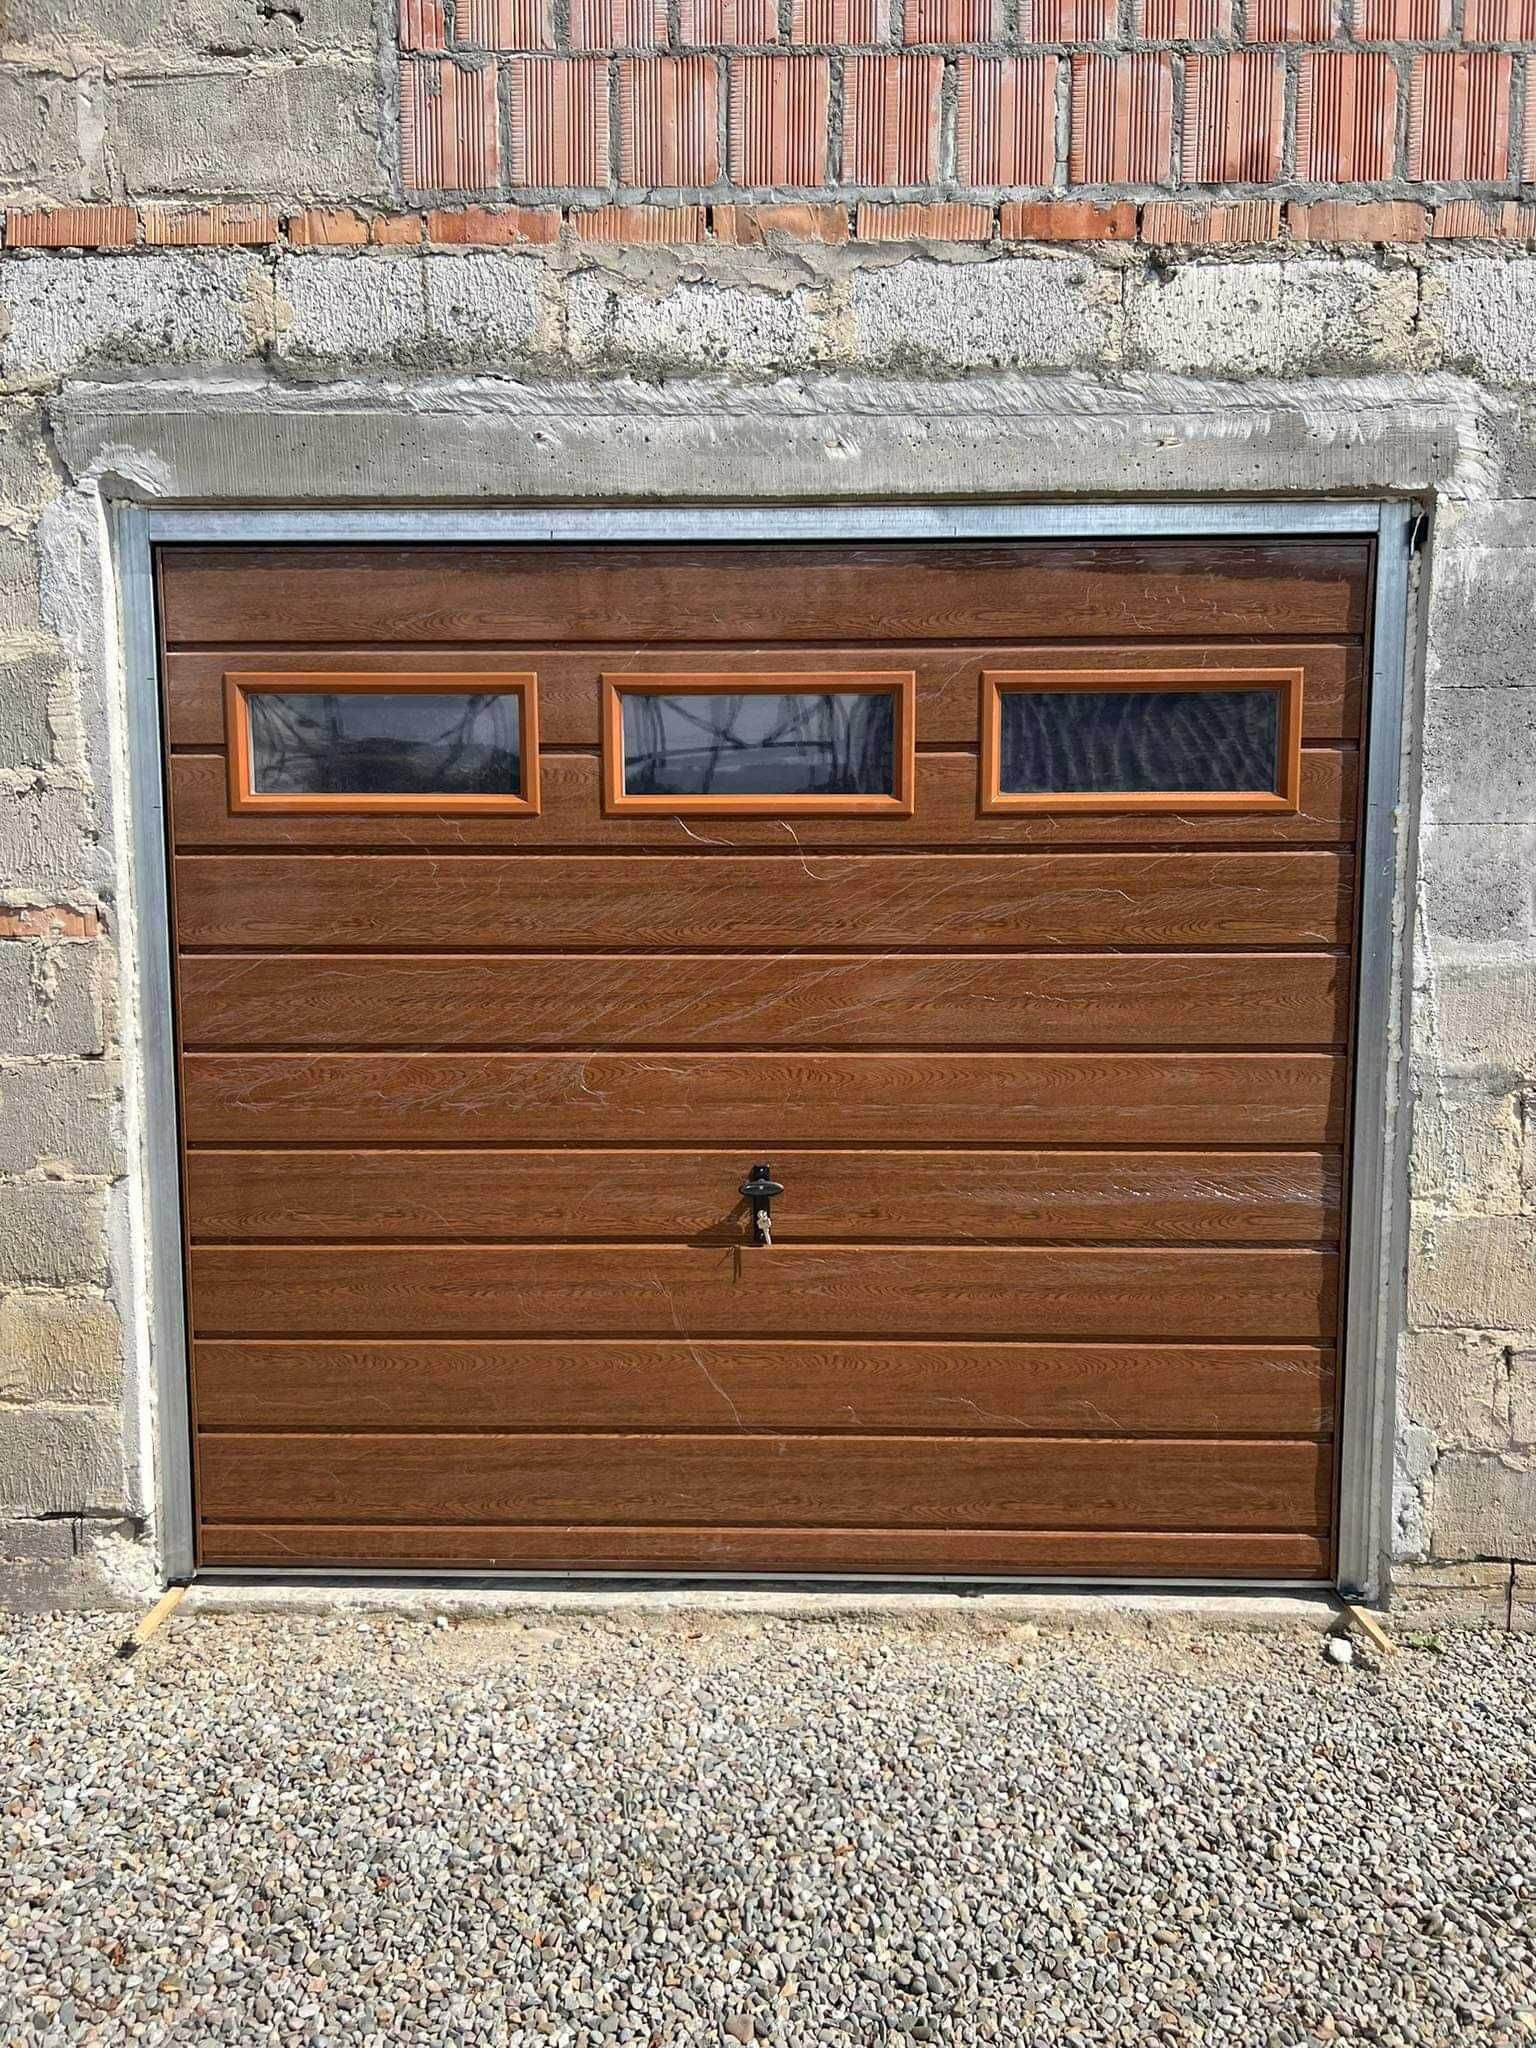 Brama garażowa Drzwi stalowwe Bramy garażowe do muru Brama na wymiar